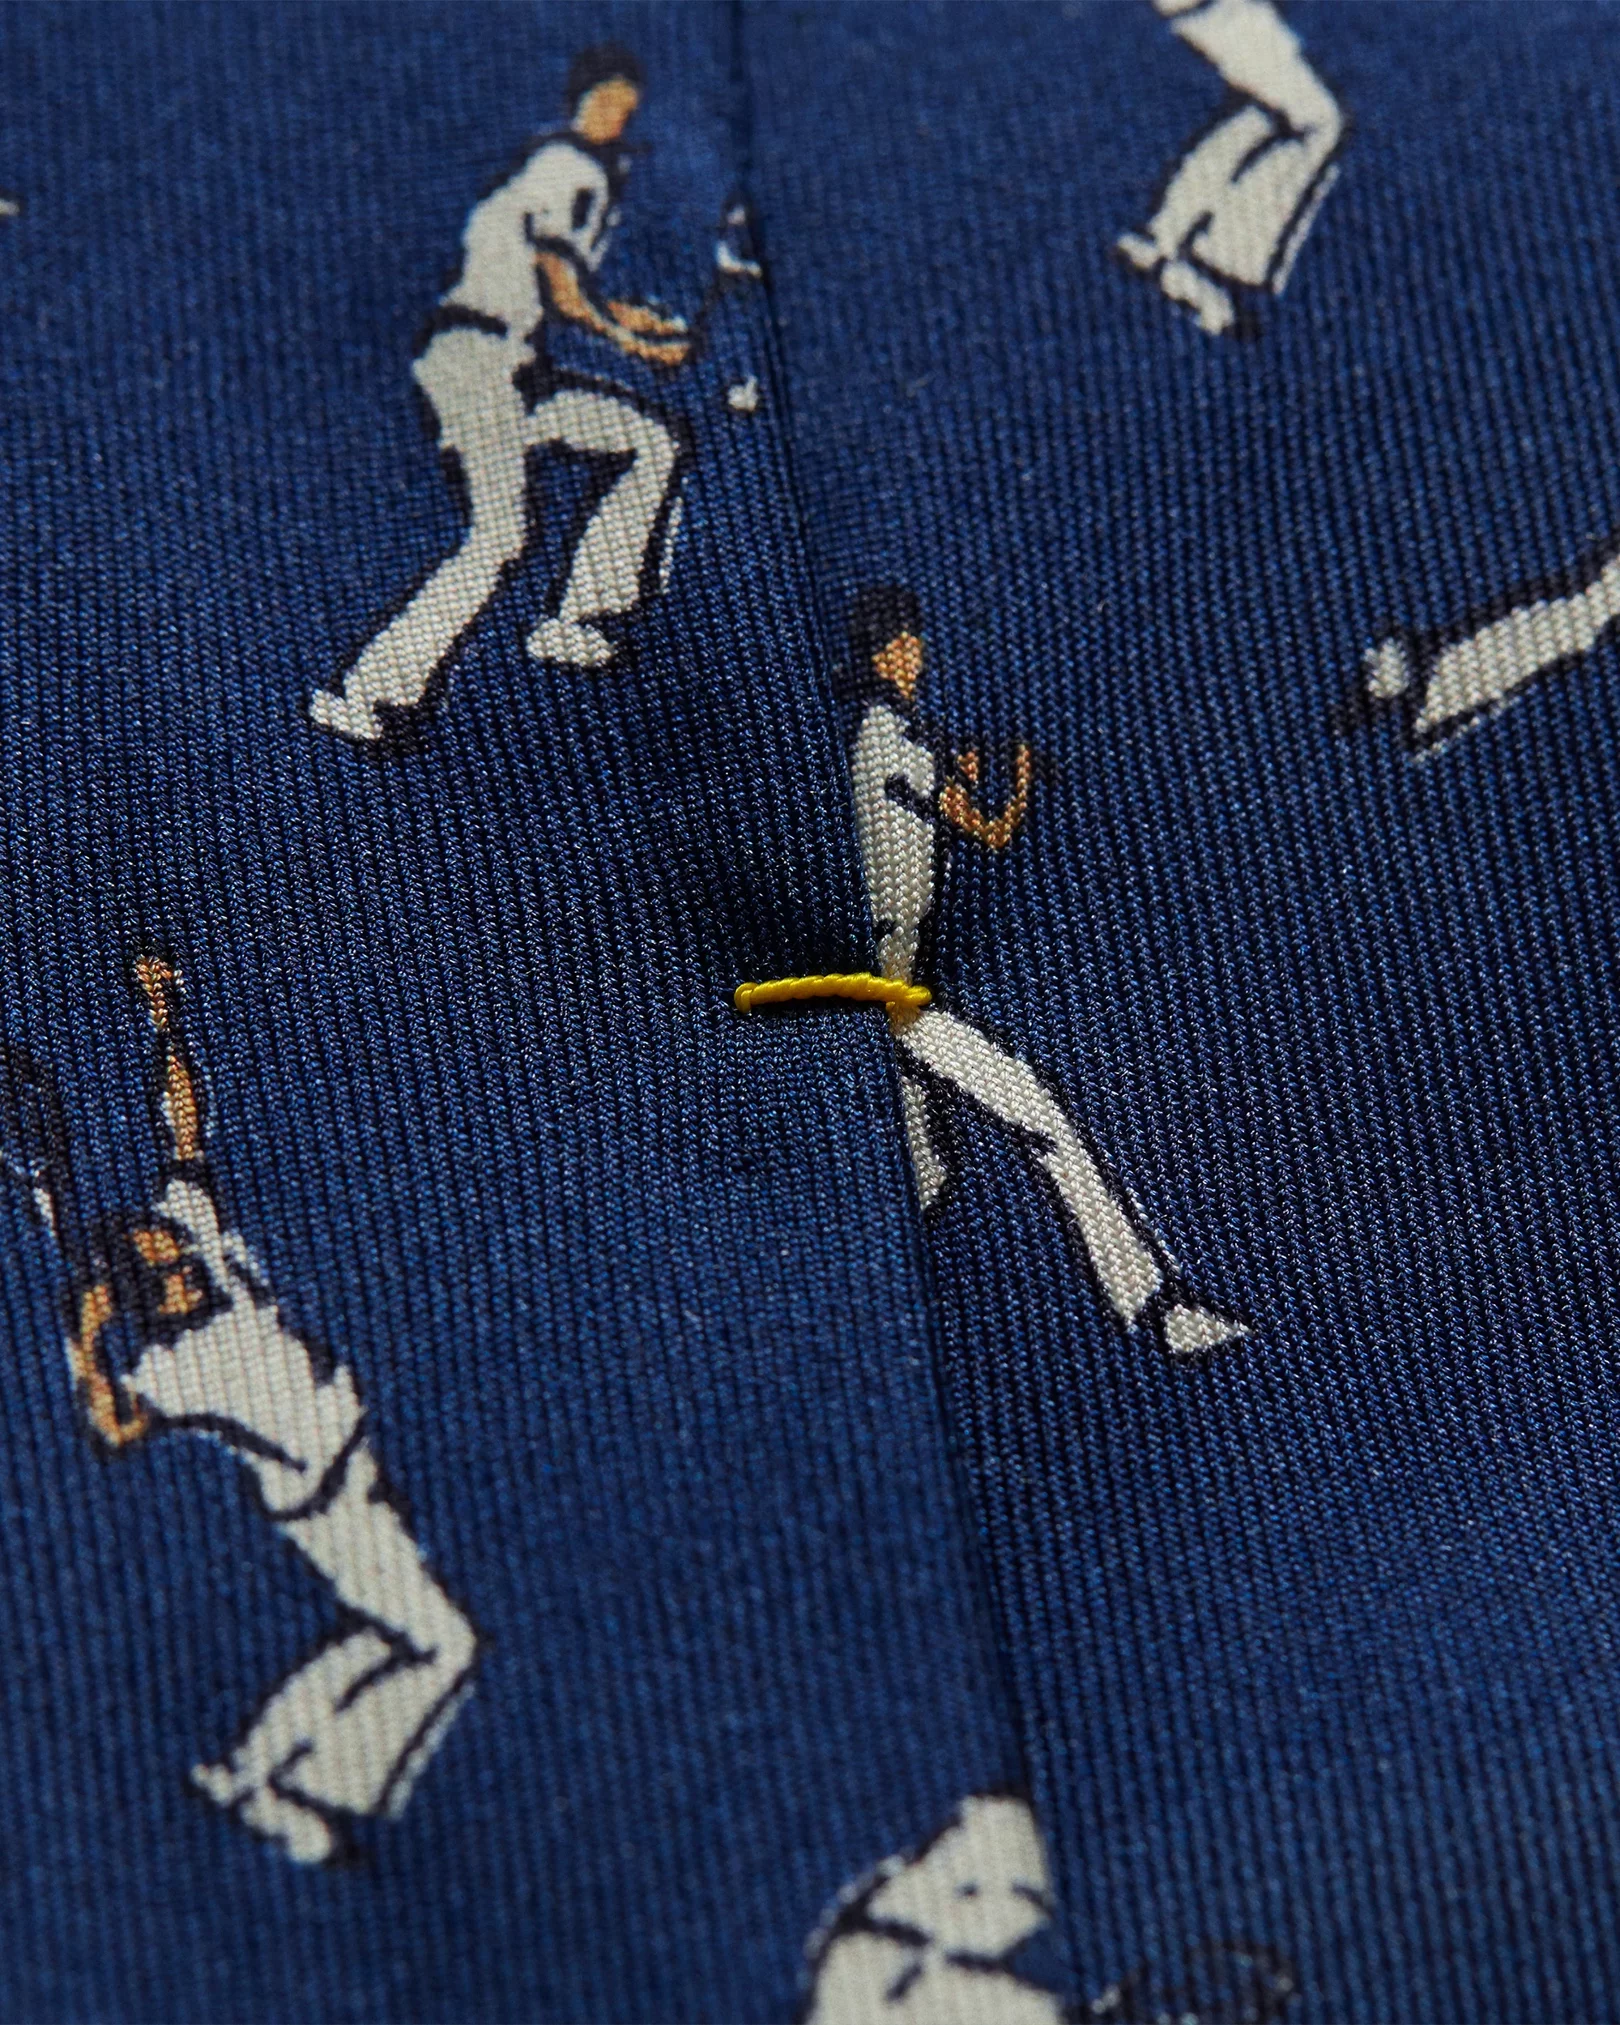 Eton - navy blue bedminton tie